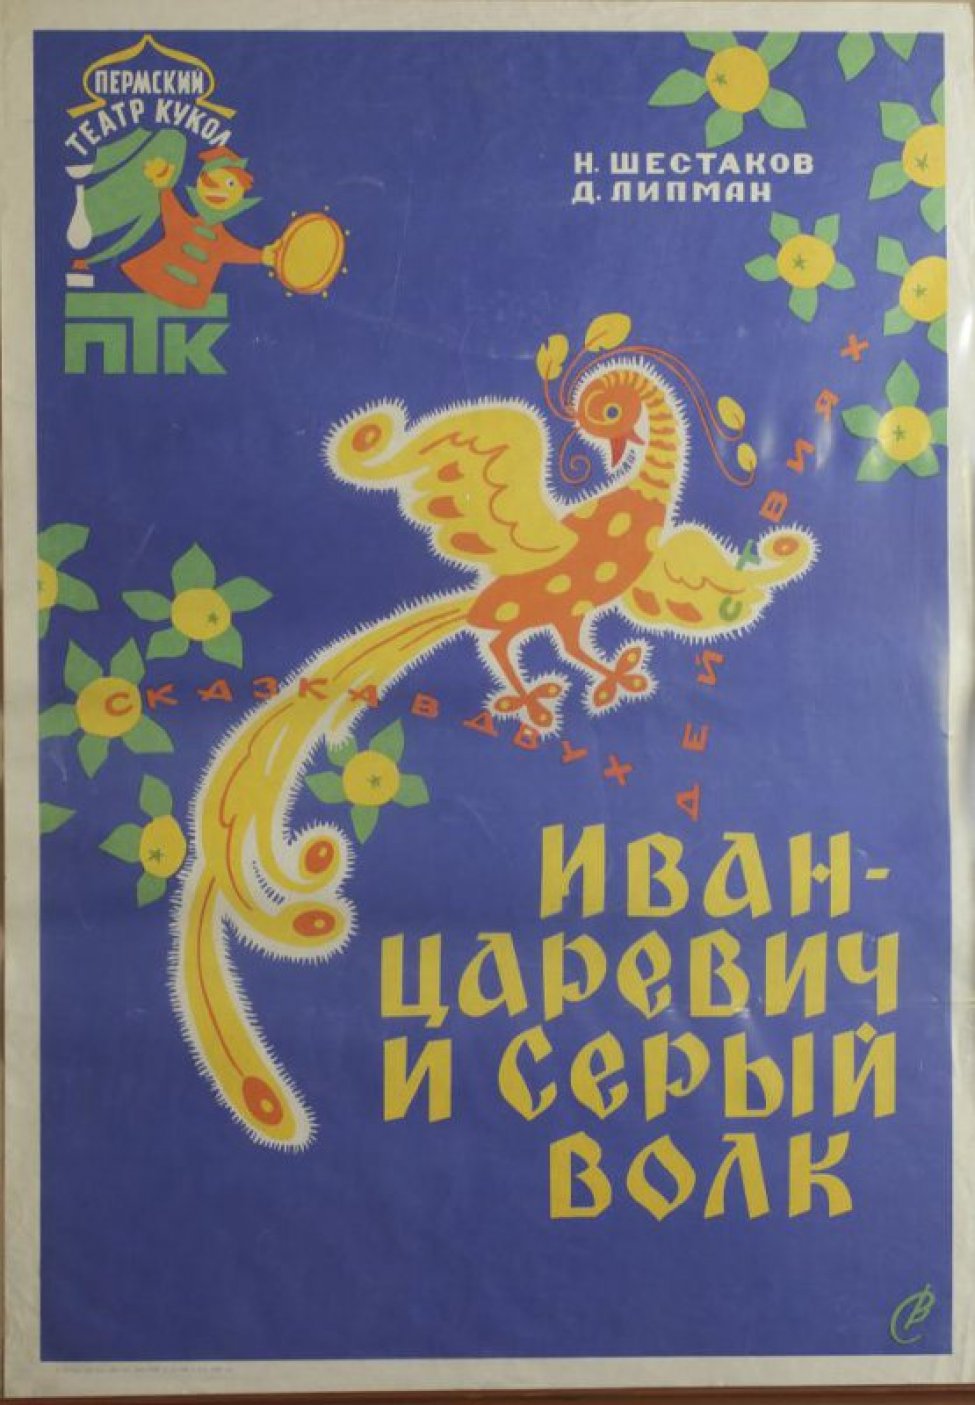 На синем фоне - стилизованное изображение сказочной жар-птицы. Вверху слева - логотип Пермского театра кукол.